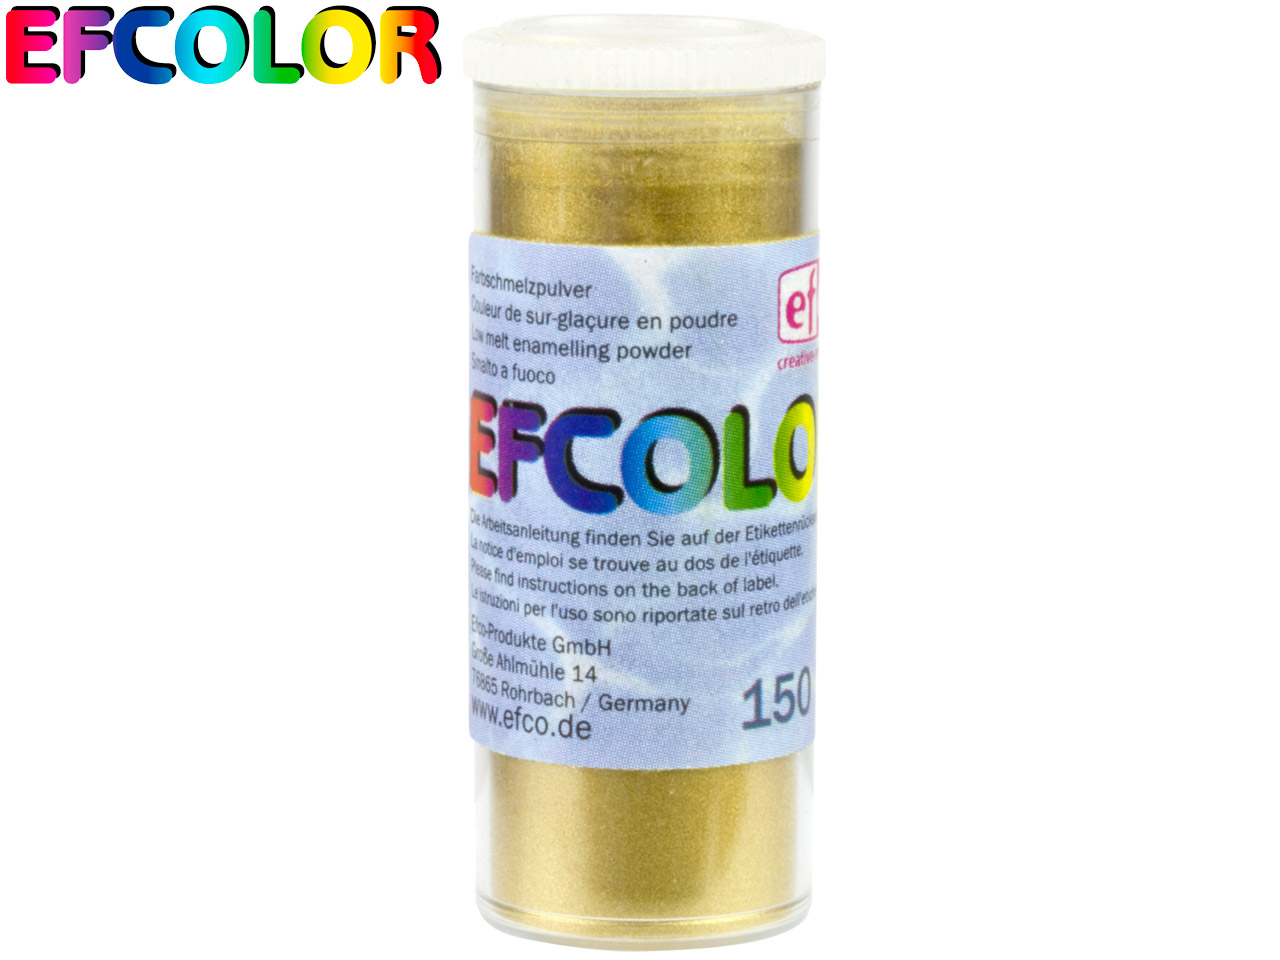 Efcolor Enamel Metallic Gold 10ml - Standard Image - 2